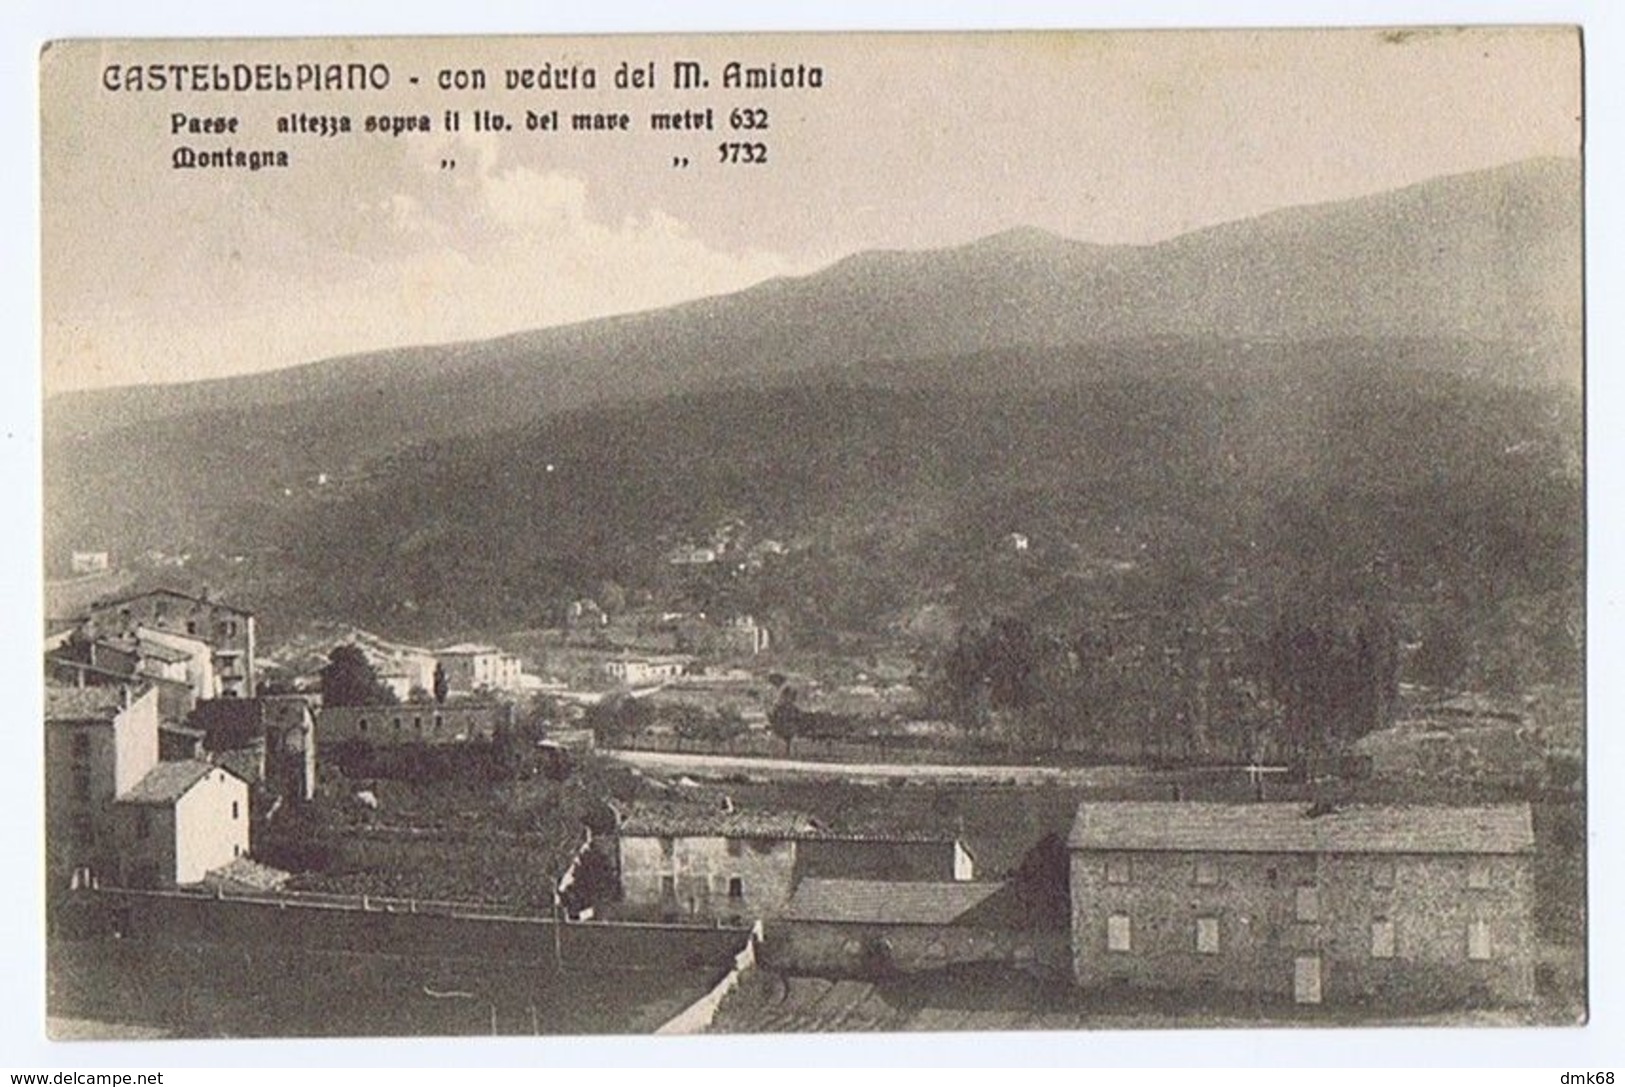 CASTEL DEL PIANO ( GROSSETO ) CON VEDUTA DEL M. AMIATA ED. VENTURINI 1912 (2981) - Grosseto